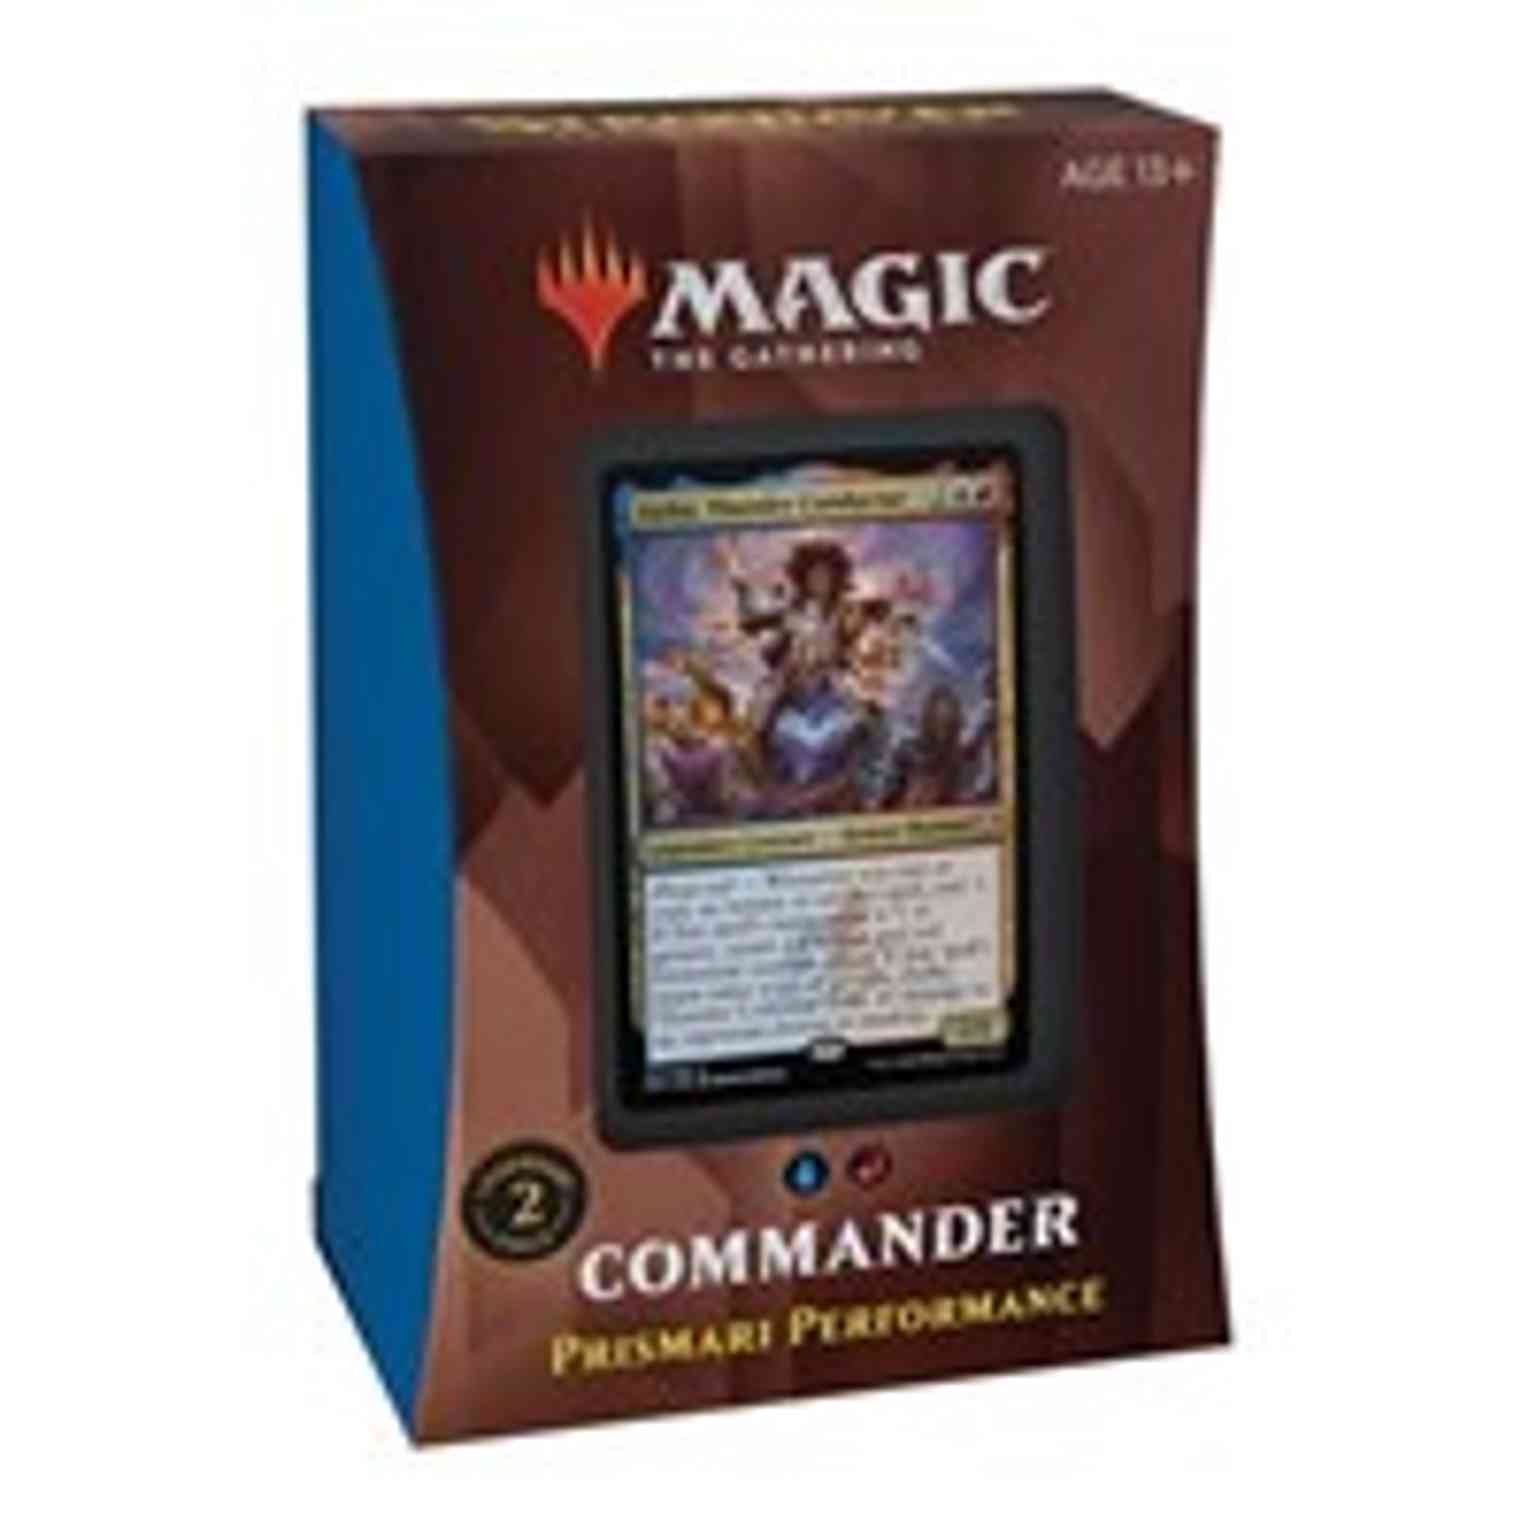 Commander 2021 Deck - Prismari Performance magic card front